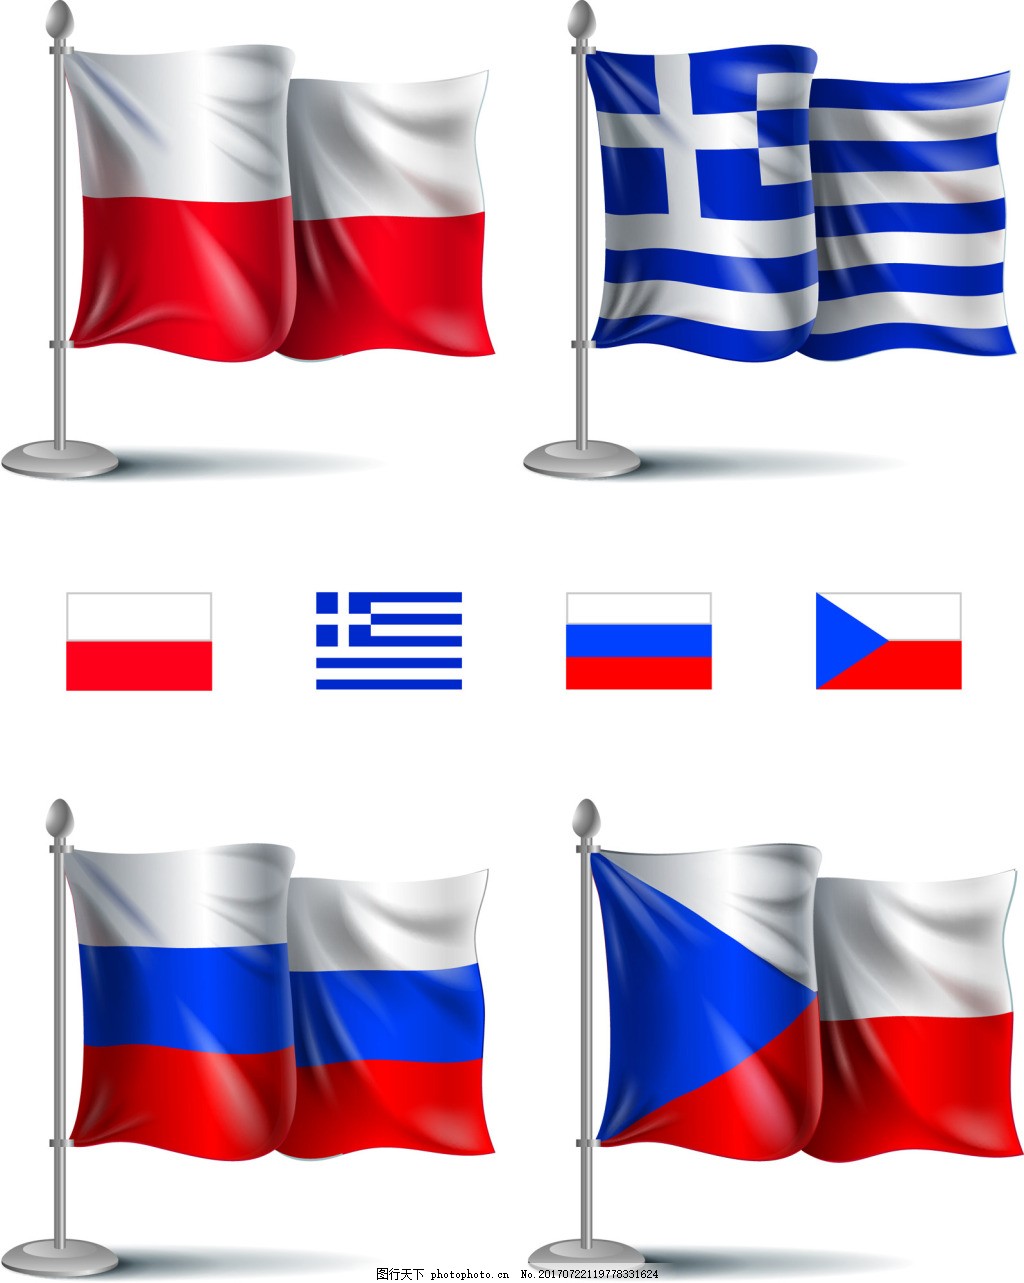 欧洲杯国旗旗帜足球矢量素材,红白旗帜 国际 国